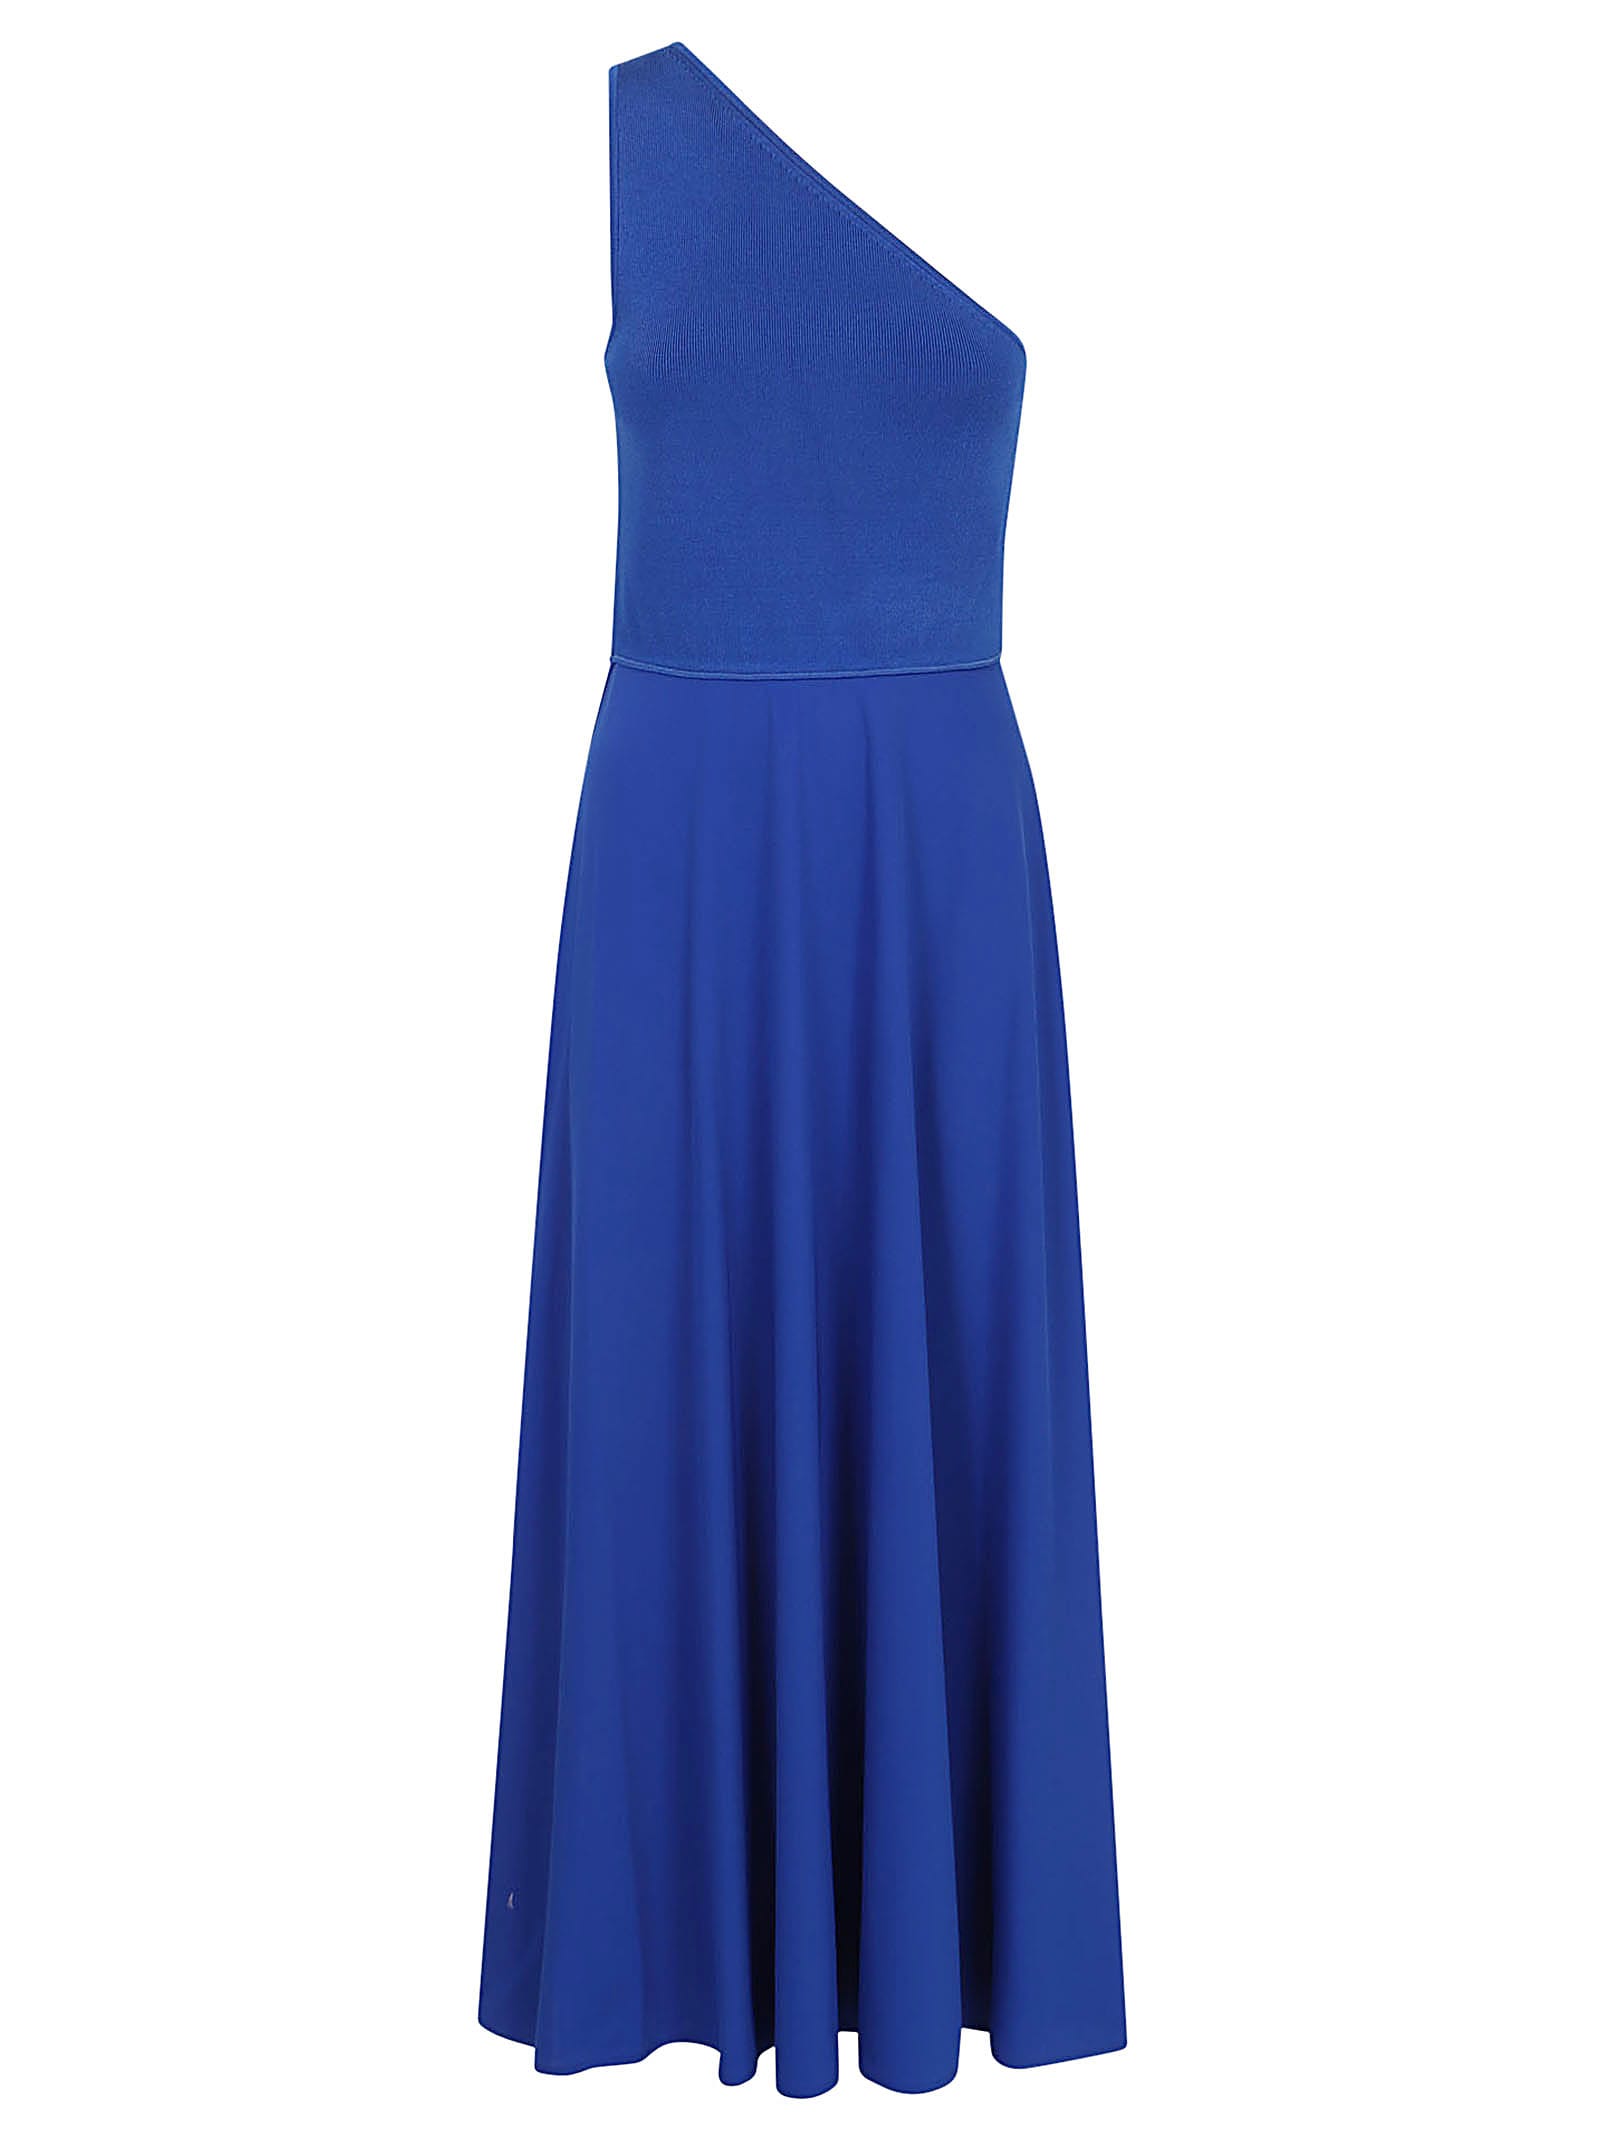 Sl Eline Dr-sleeveless-cocktail Dress Polo Ralph Lauren - BLUETTE - female - Size: Medium